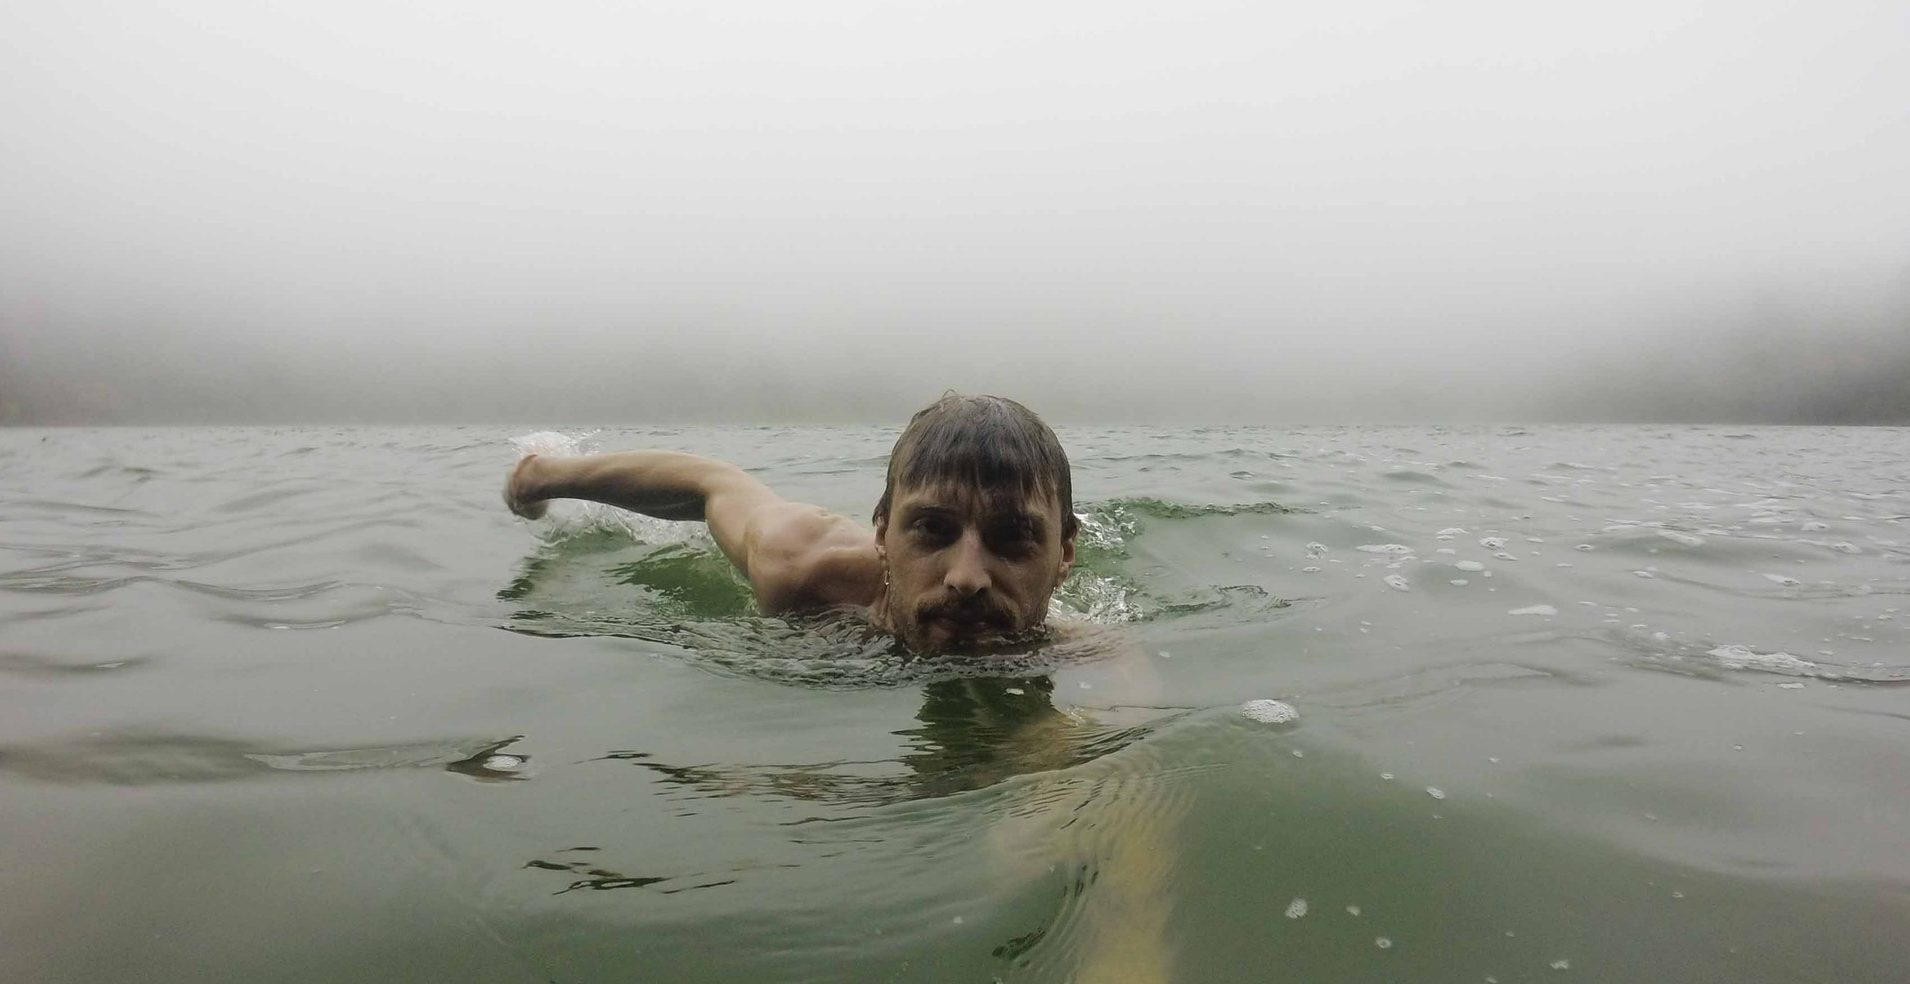 hideg vízben és visszérben úszva)